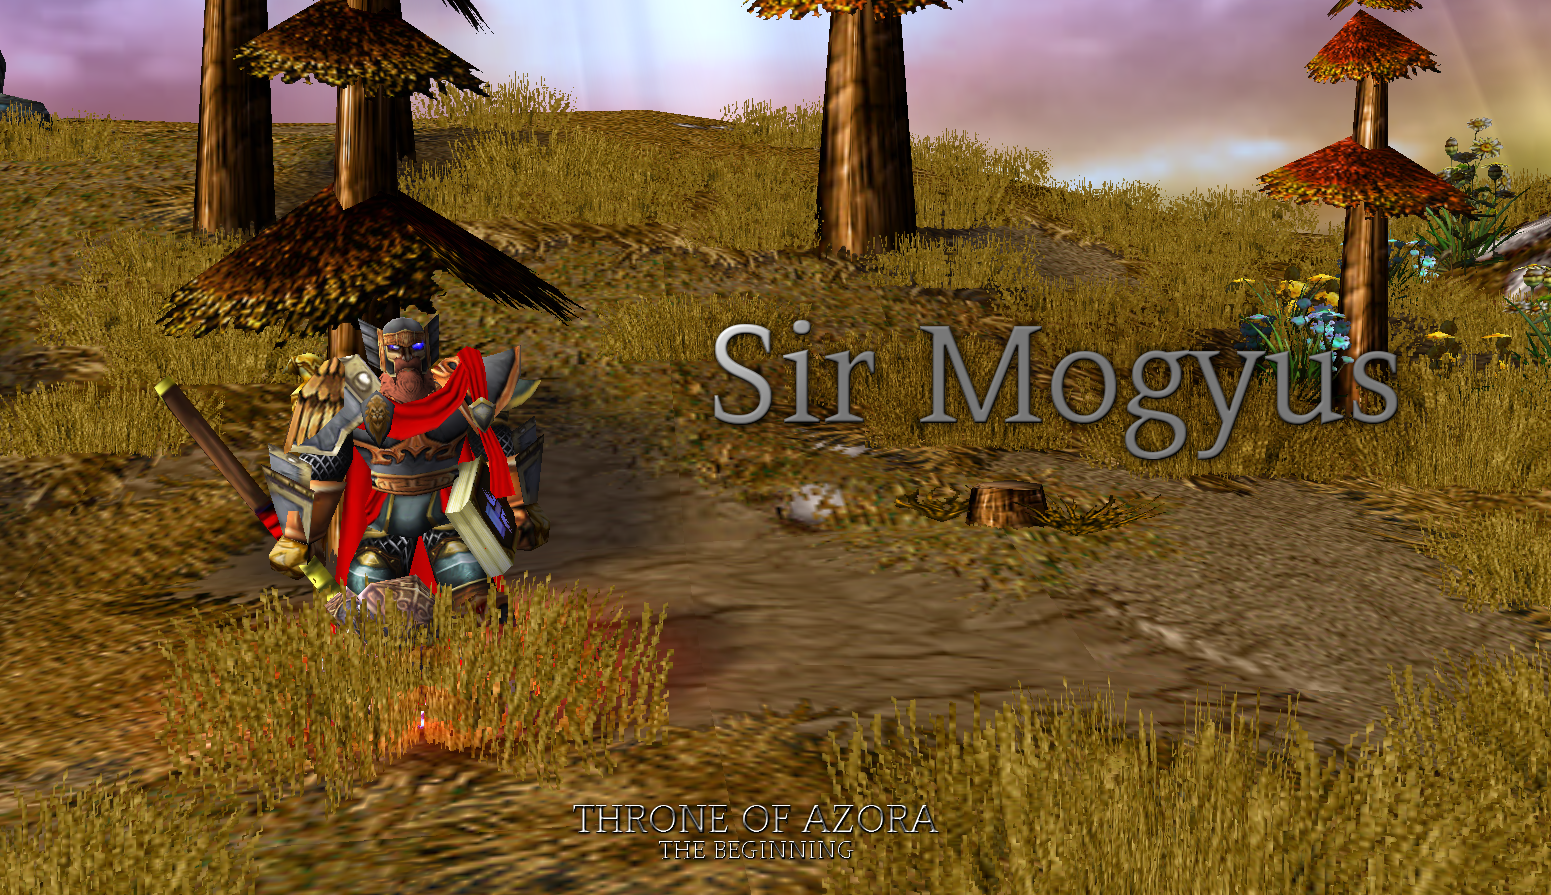 Sir Mogyous